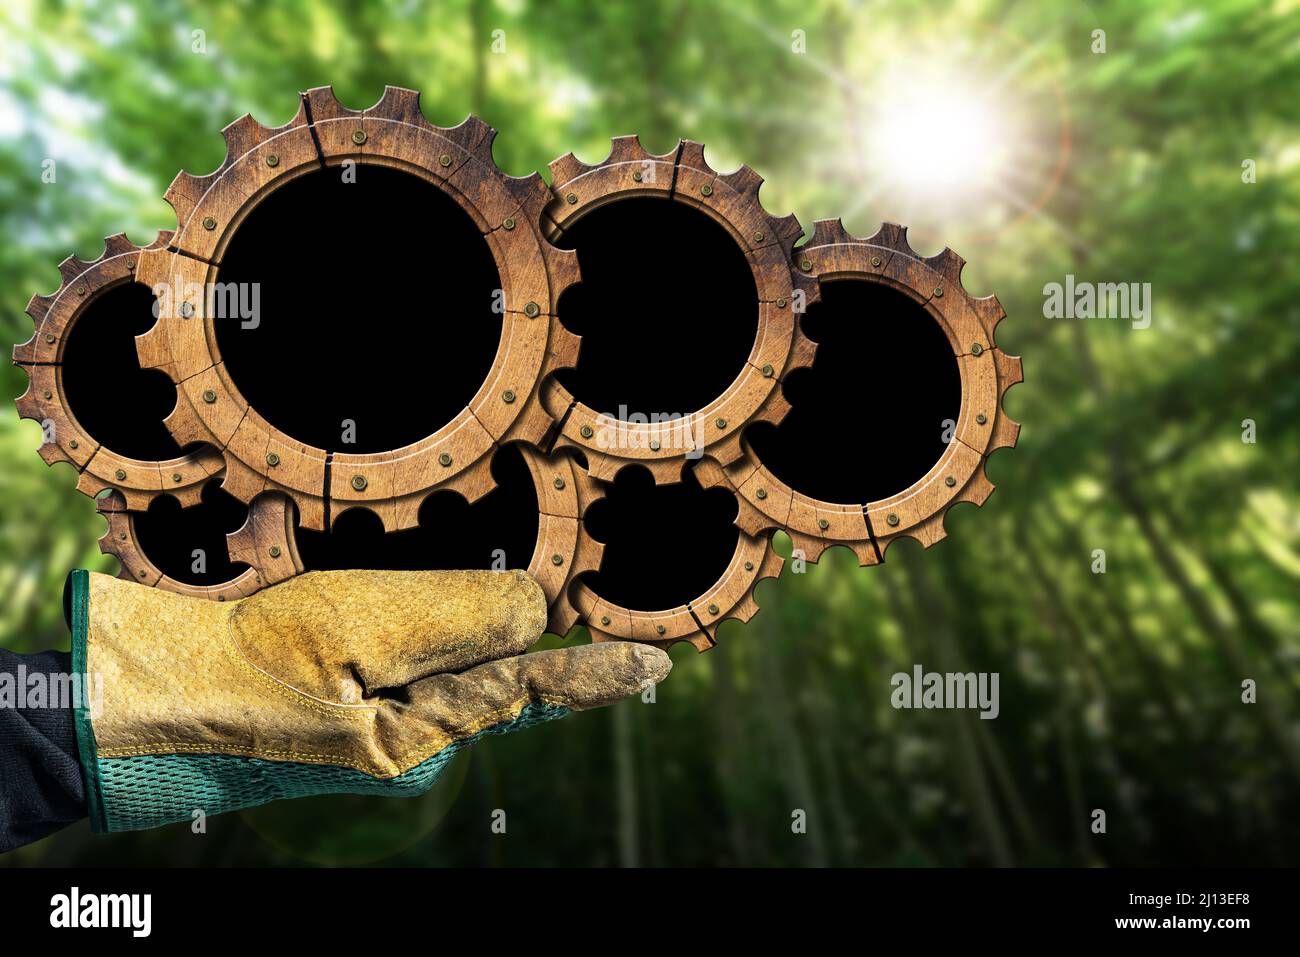 Mano con guante de trabajo protector que sostiene un grupo de siete ruedas dentadas de madera (engranajes) con espacio de copia, en un bosque verde. Concepto de recursos sostenibles. Foto de stock